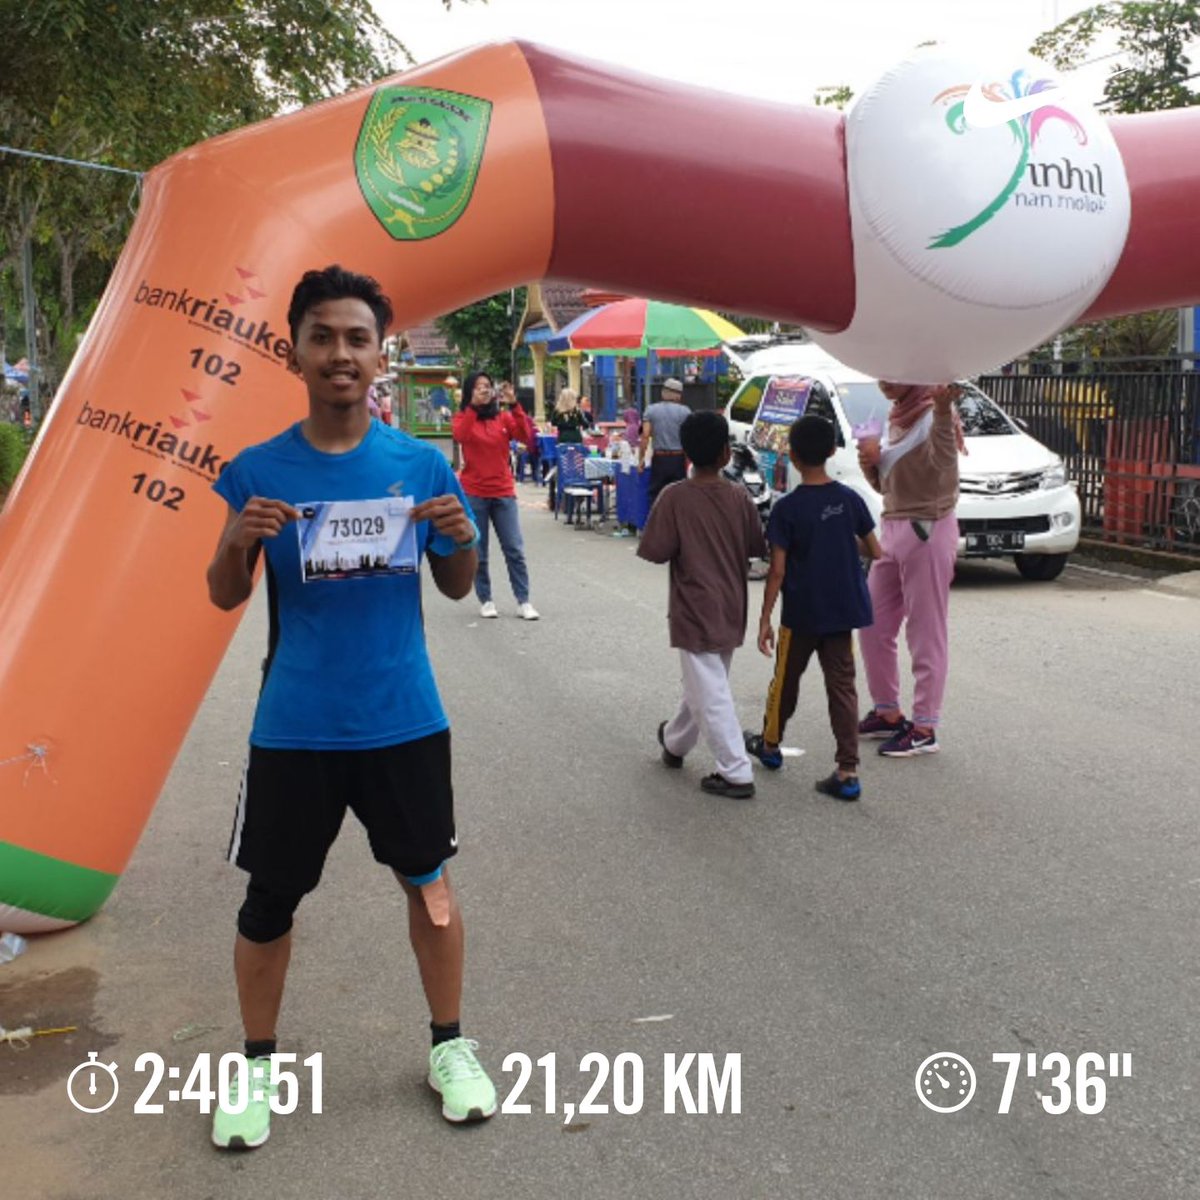 Ikut #jakartamarathon #jakmar2019 versi virtual yg 21km. DONE, beibeh 😘😘